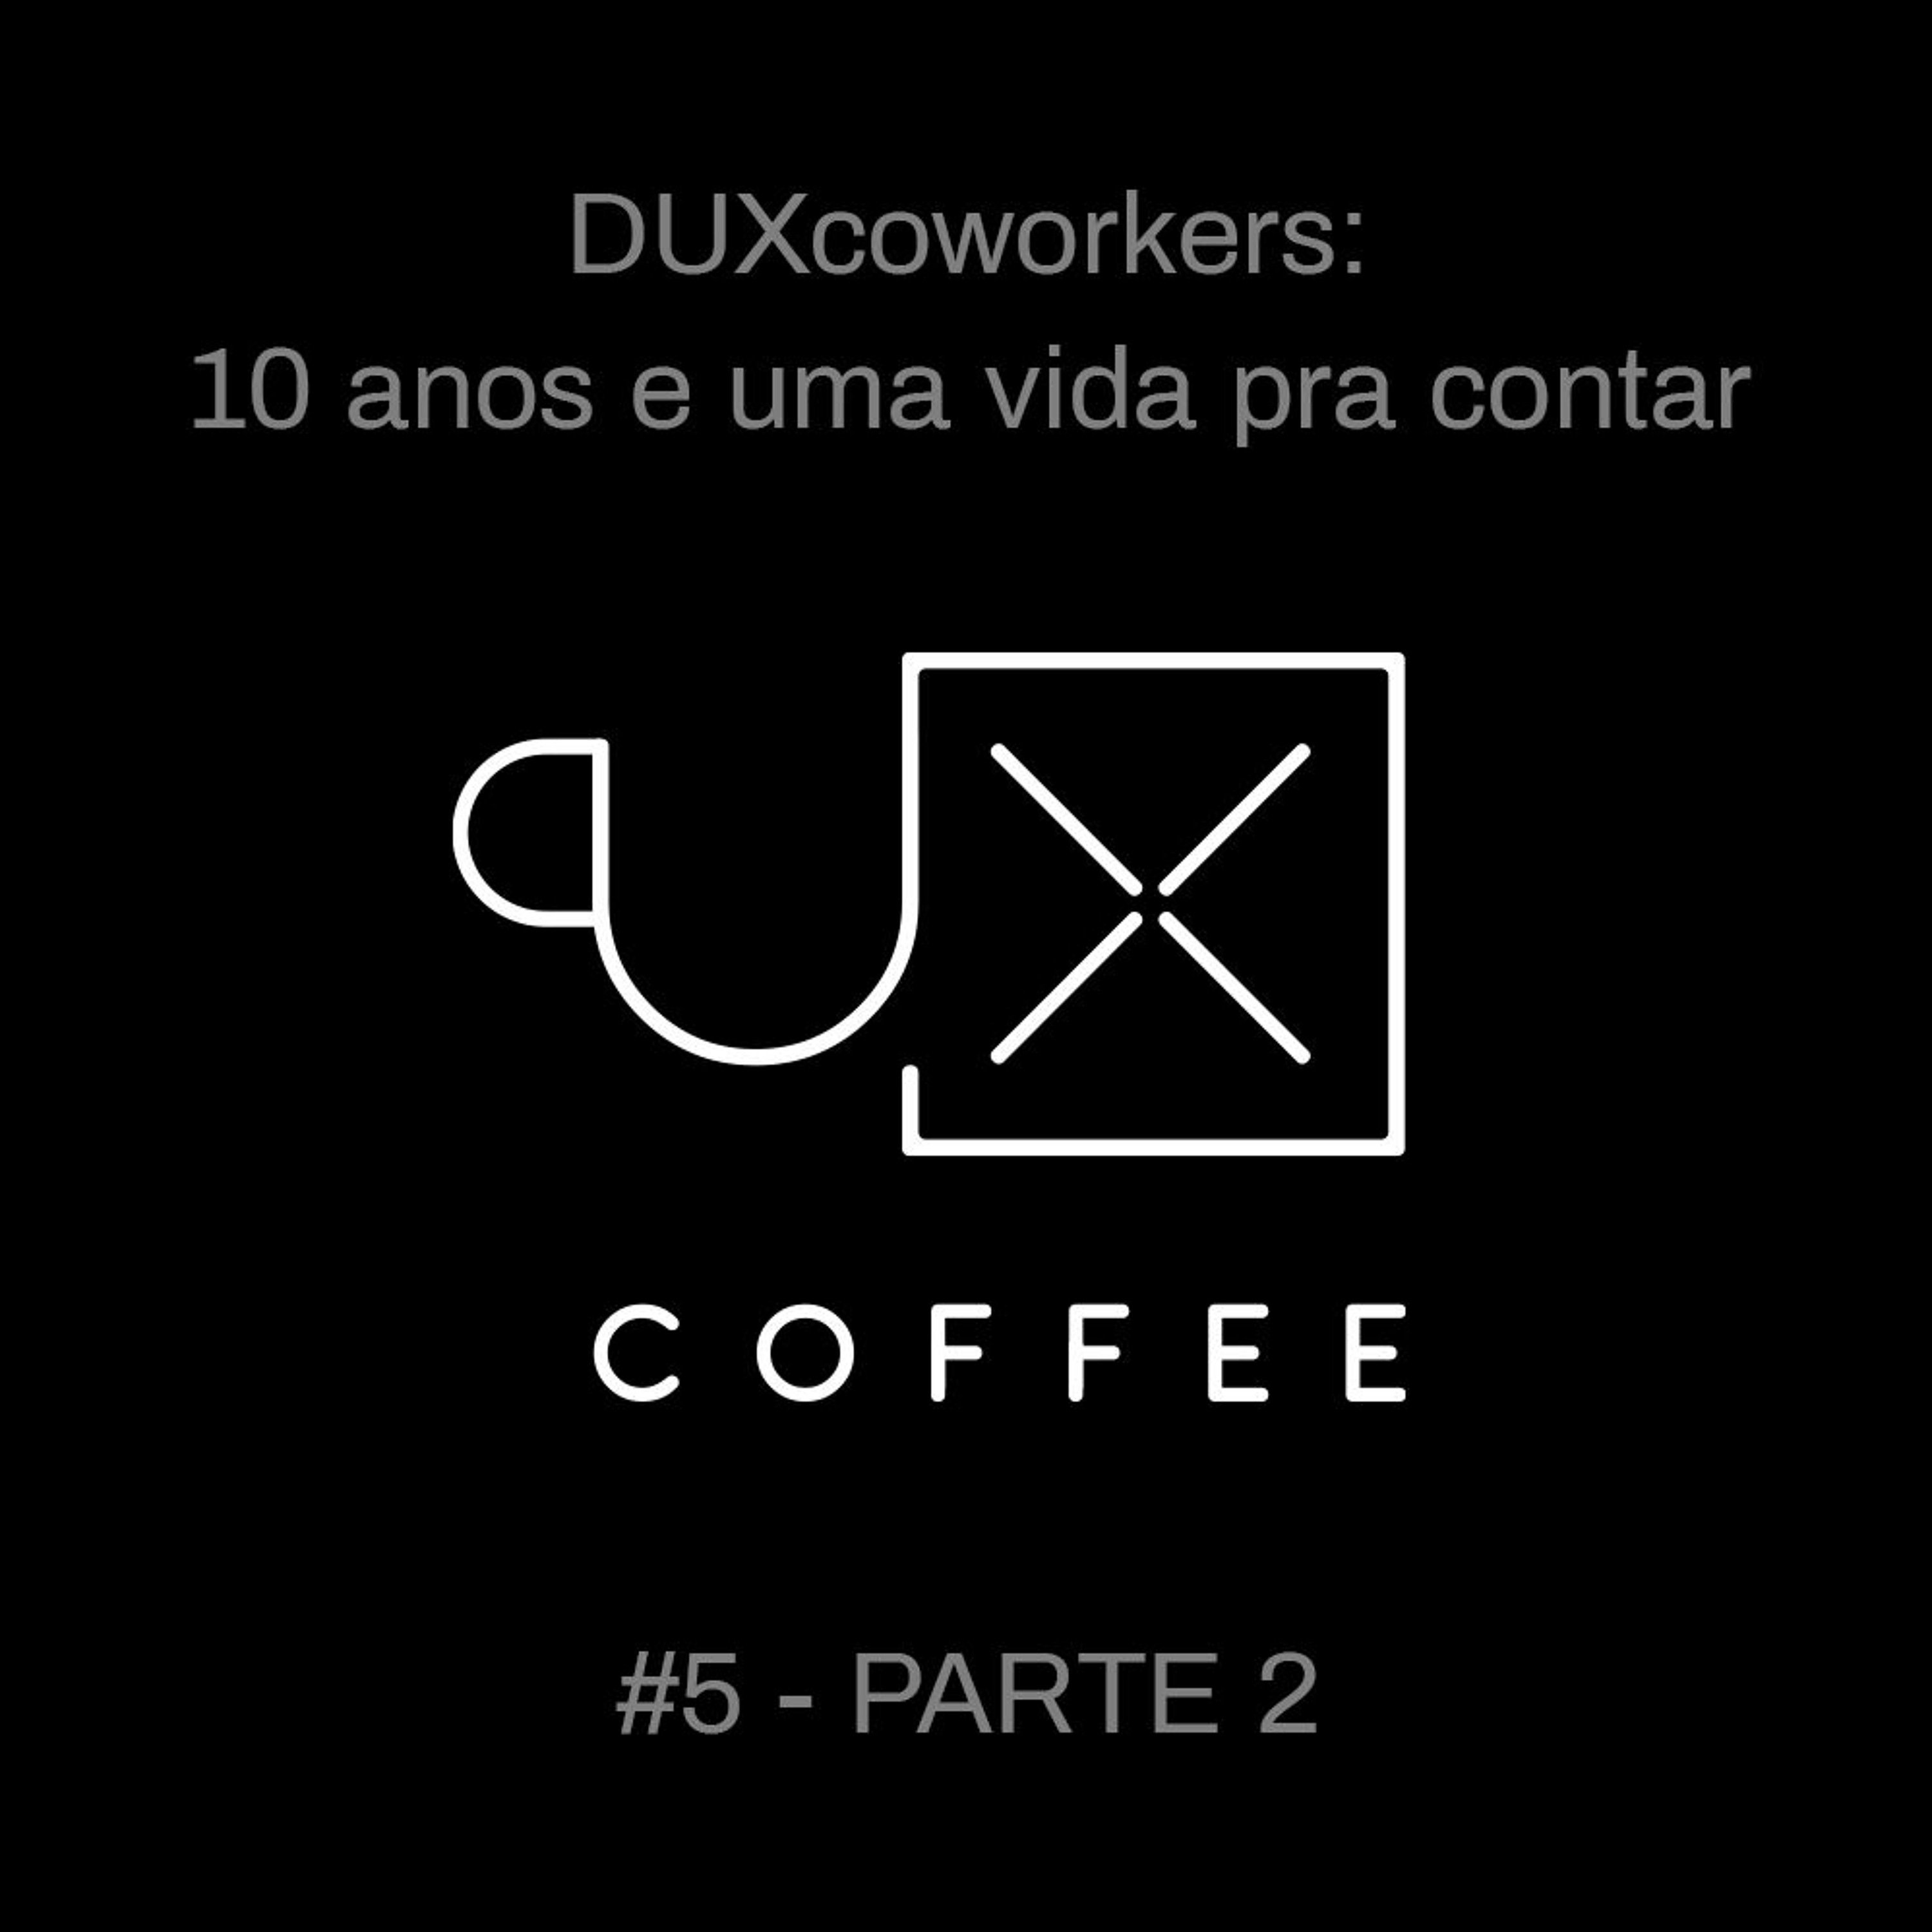 014- UXcoffee#5 - 10 anos e uma vida pra contar - ep.2